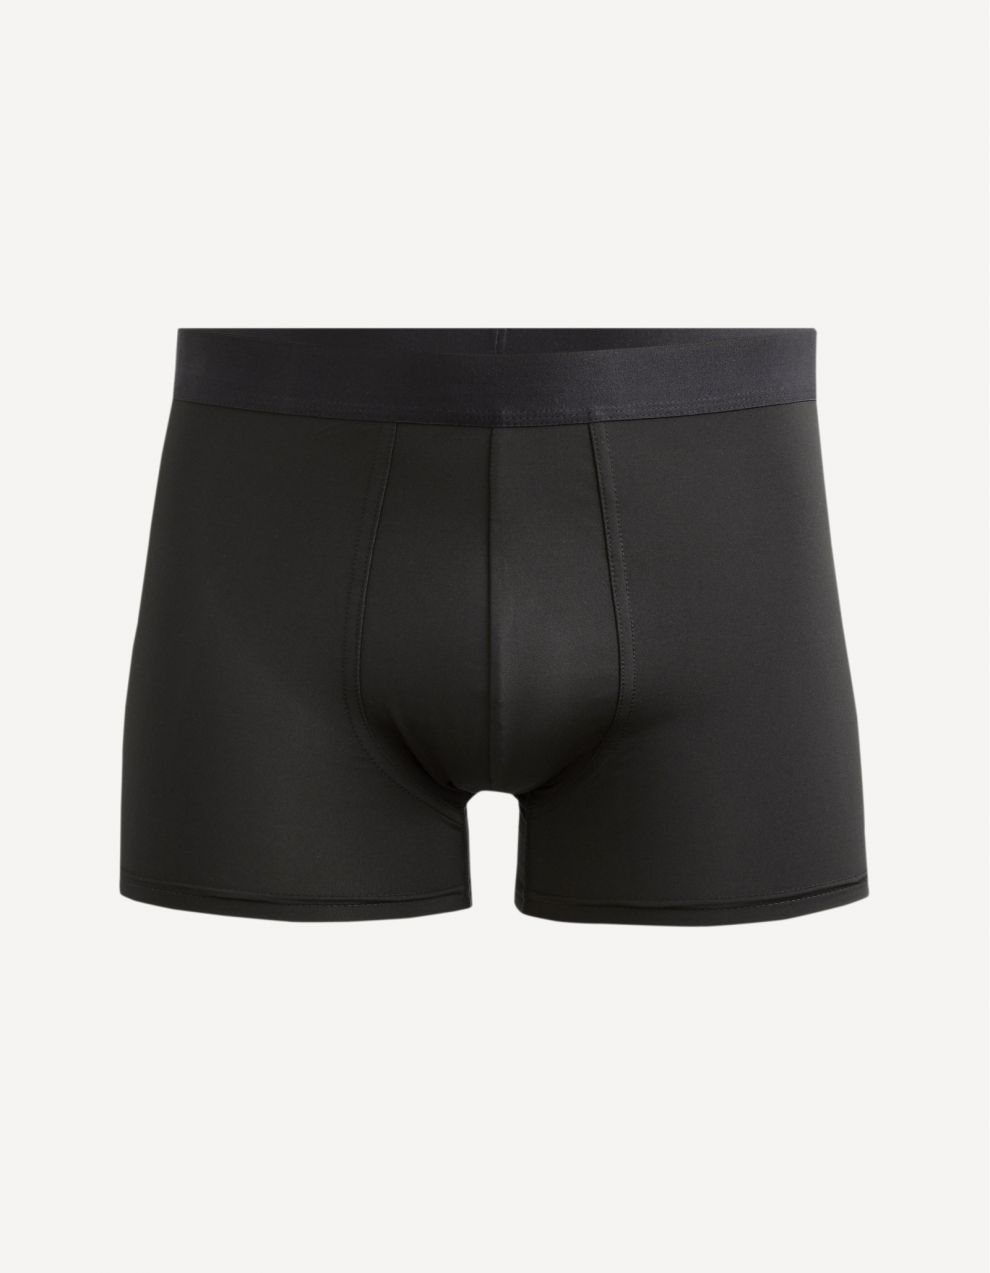 Celio Boxer Shorts Sipure - Men's